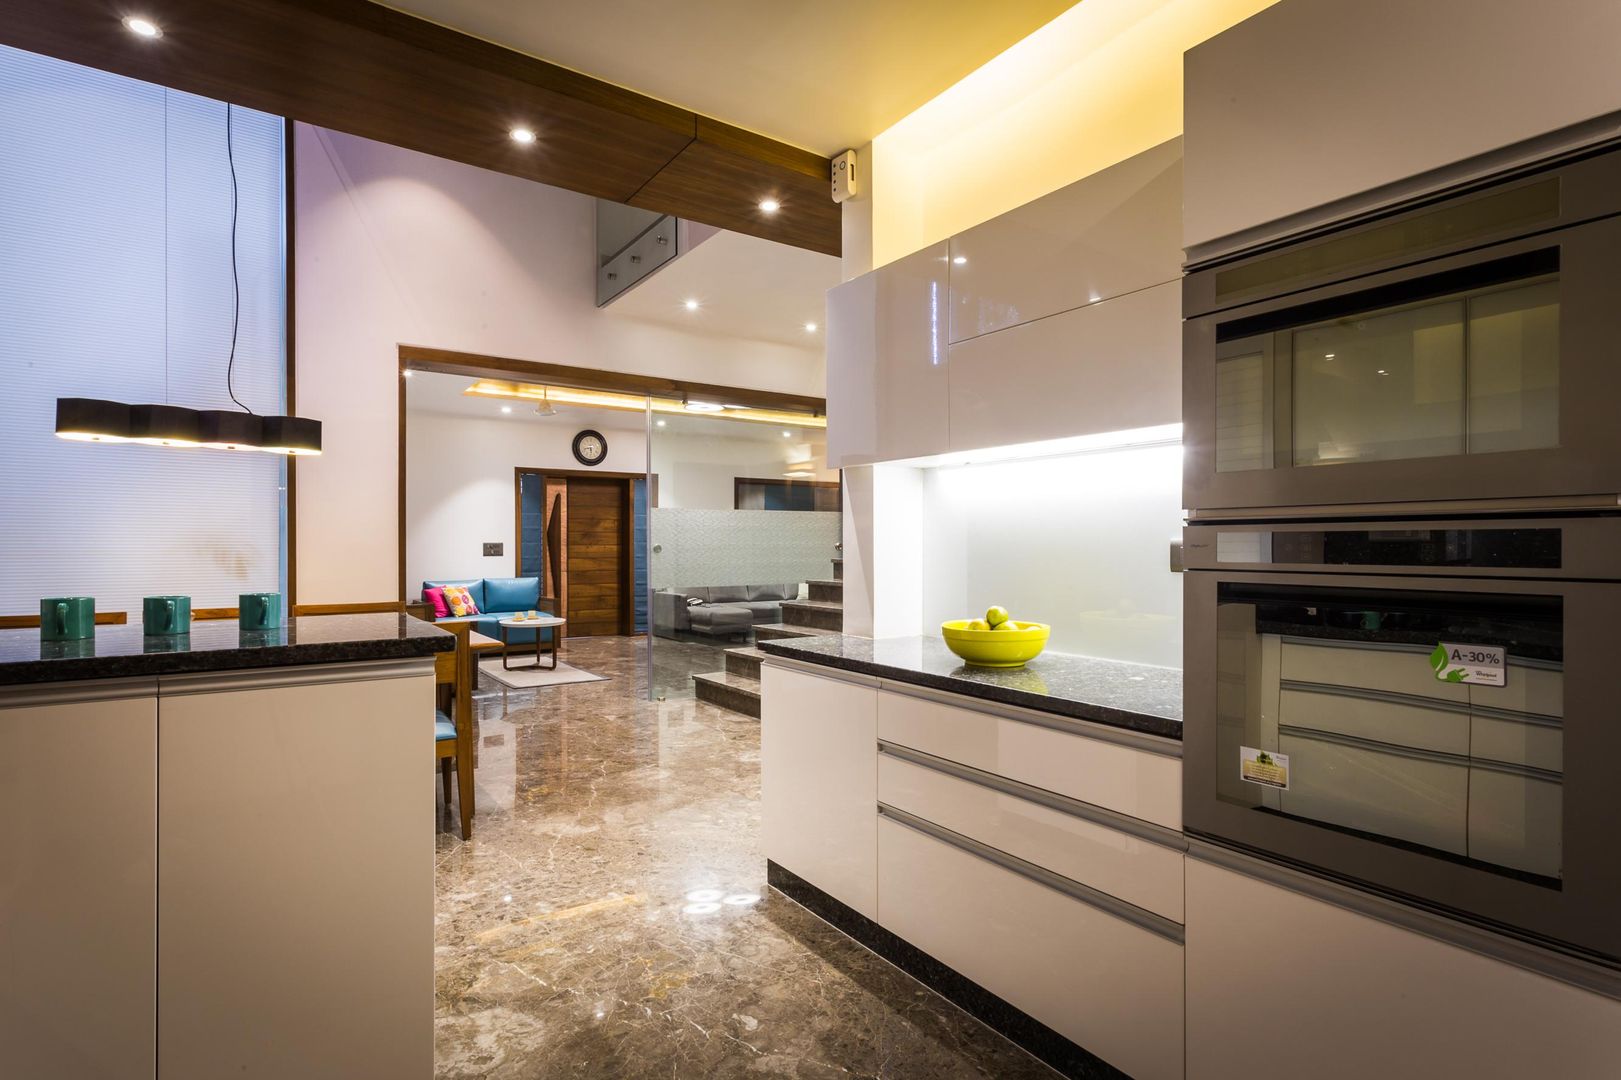 Chandresh bhai interiors, Vipul Patel Architects Vipul Patel Architects Cocinas modernas: Ideas, imágenes y decoración